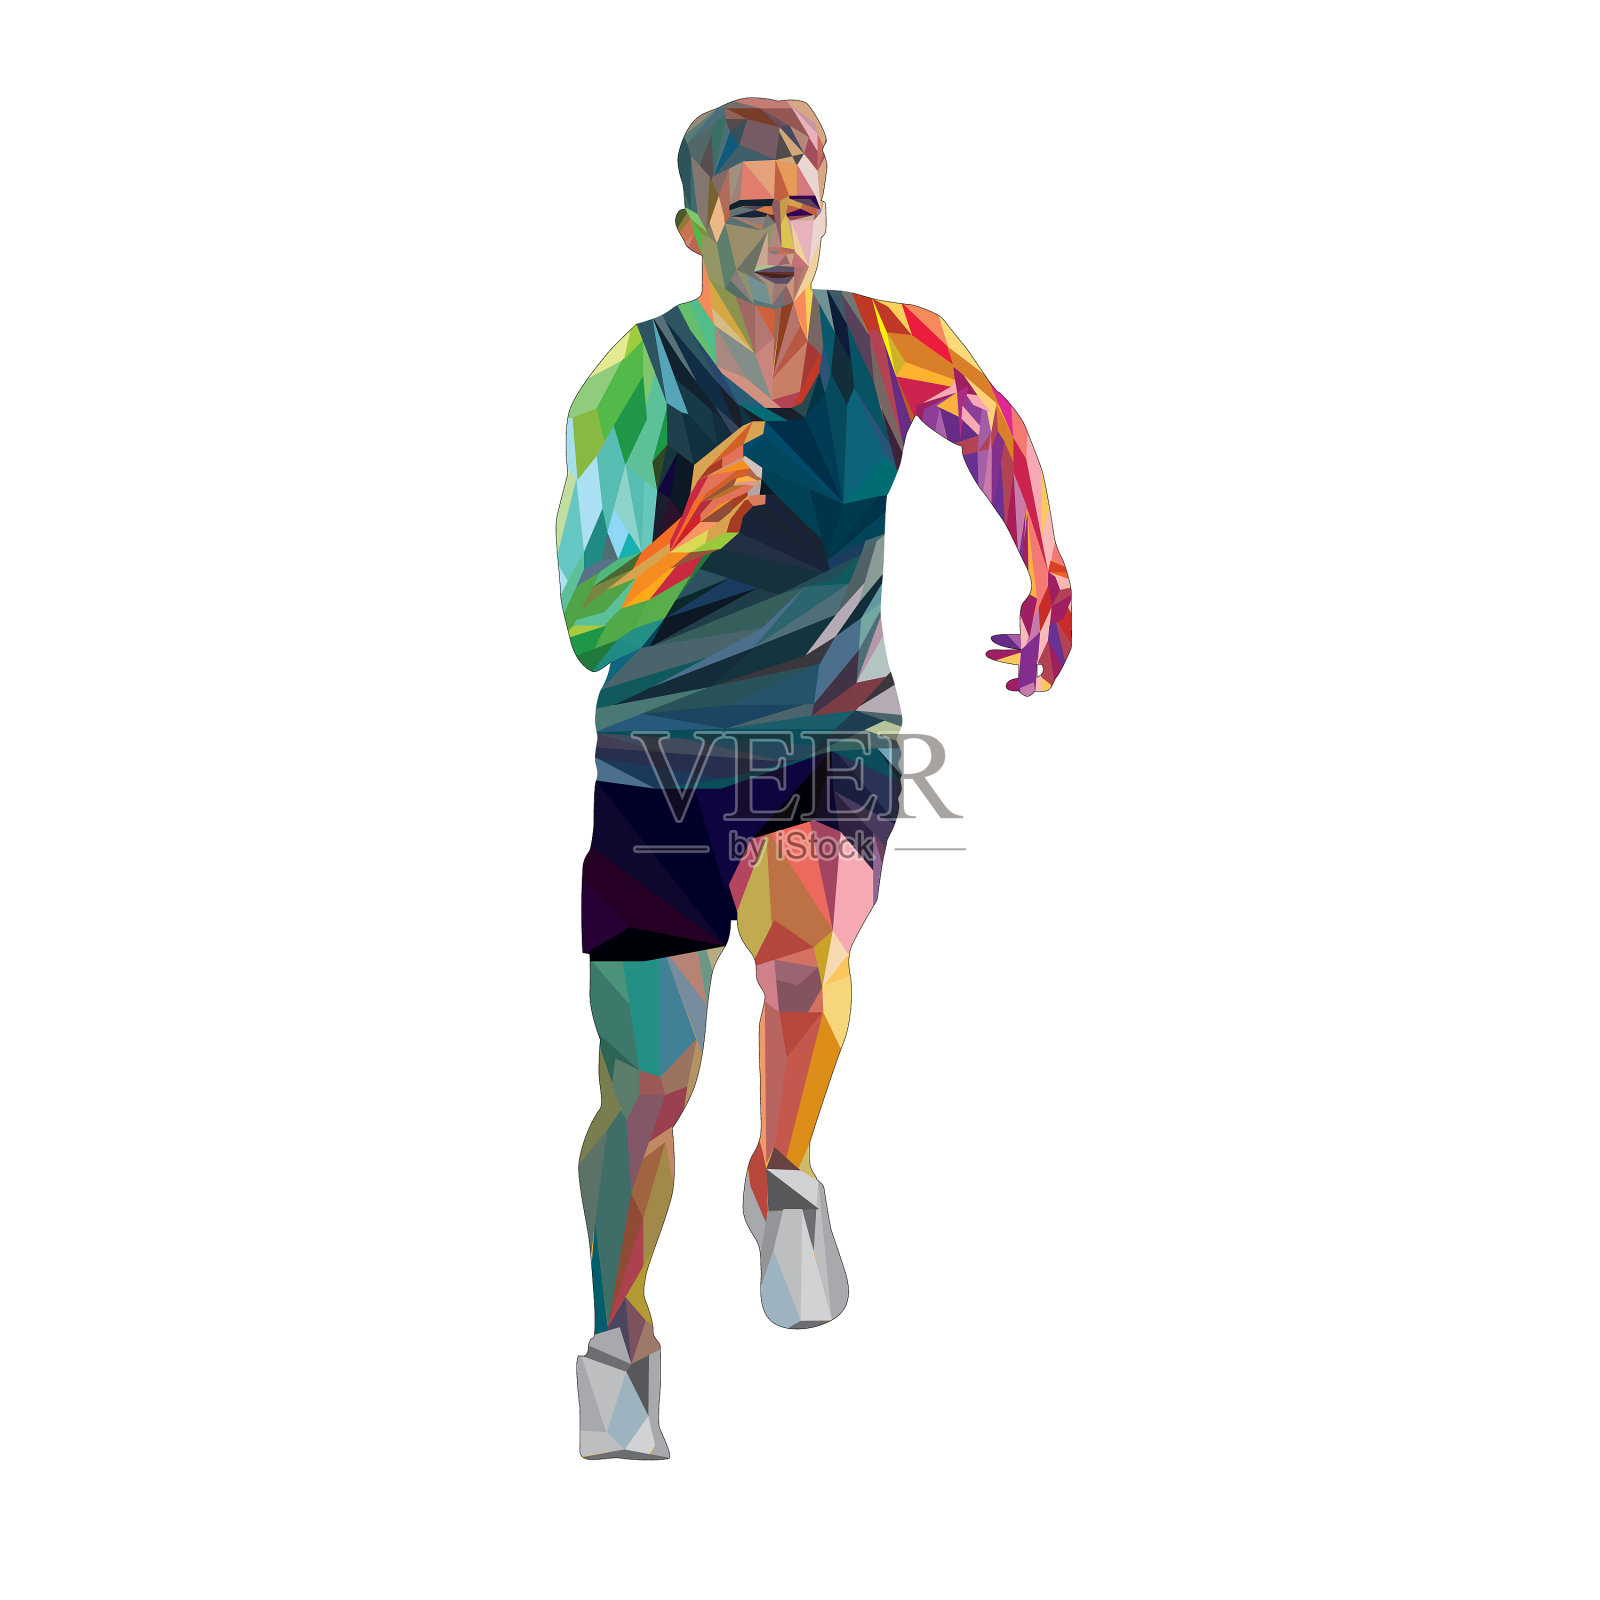 运动员在跑步时的动作是画的插画图片素材